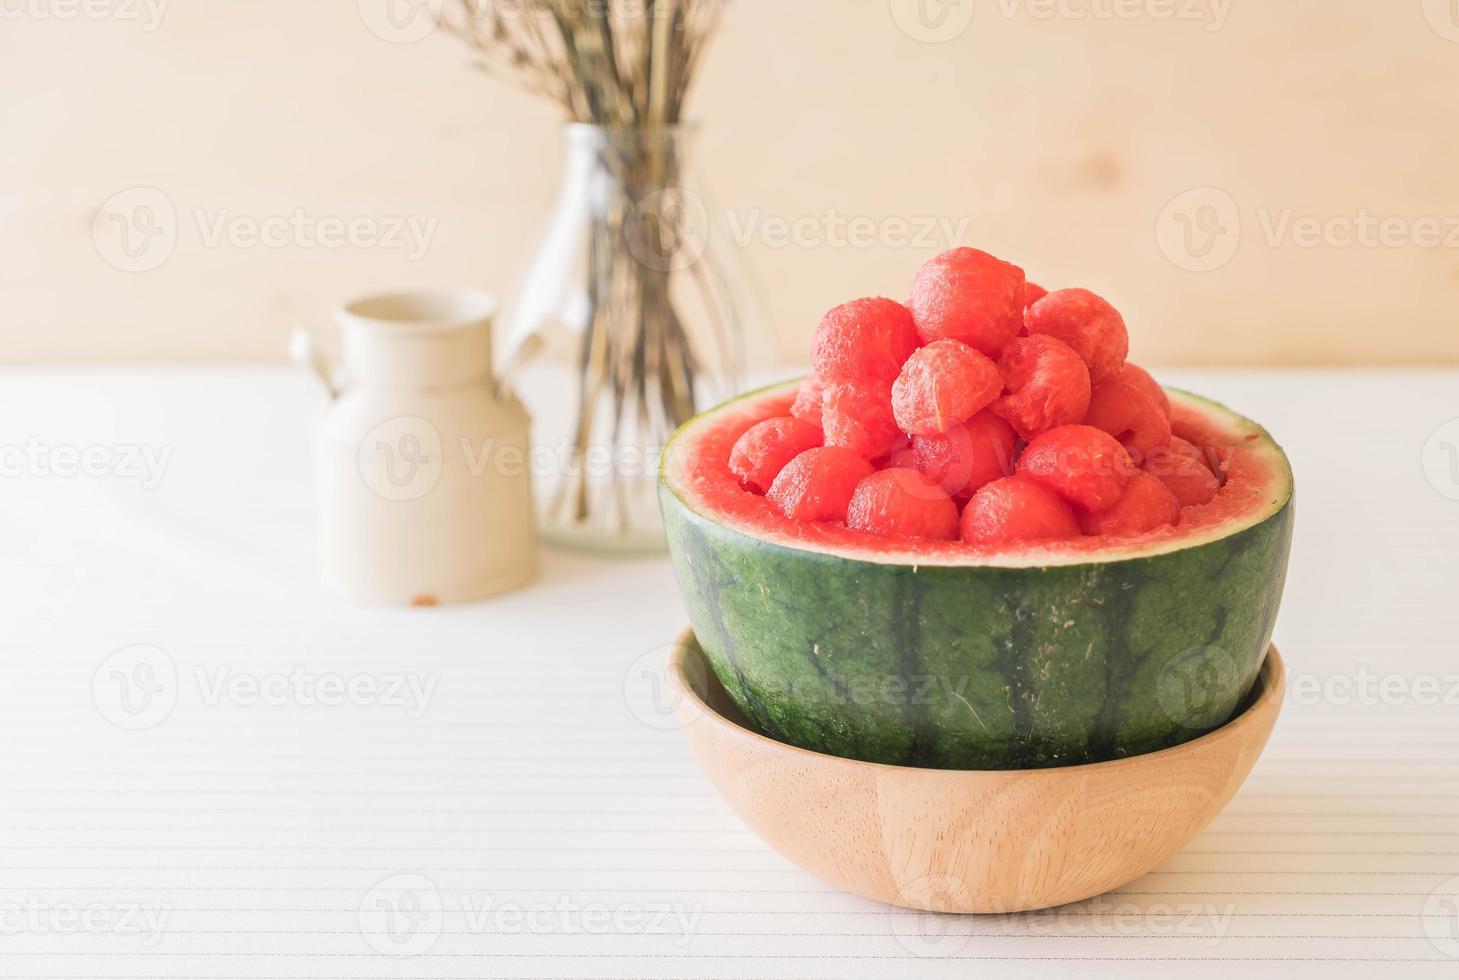 frische Wassermelone auf dem Tisch foto